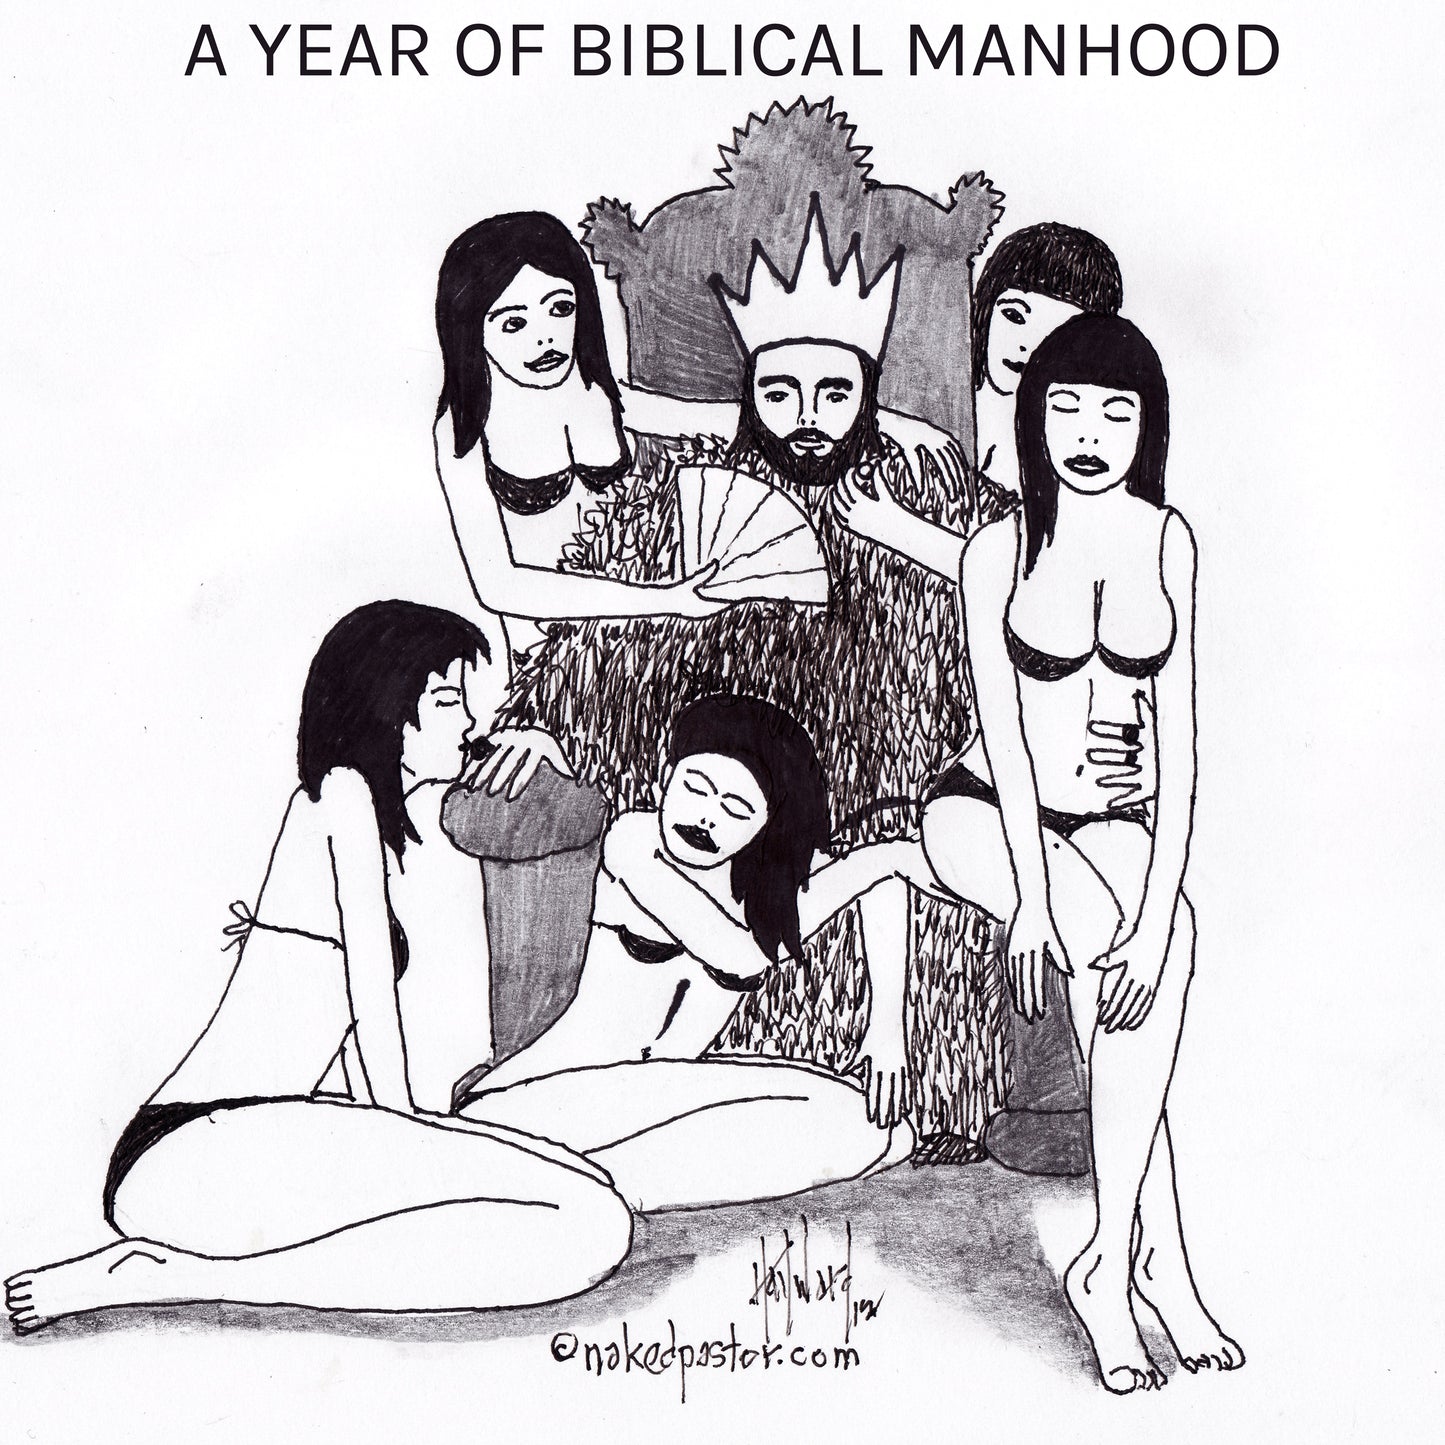 A Year of Biblical Manhood Digital Cartoon